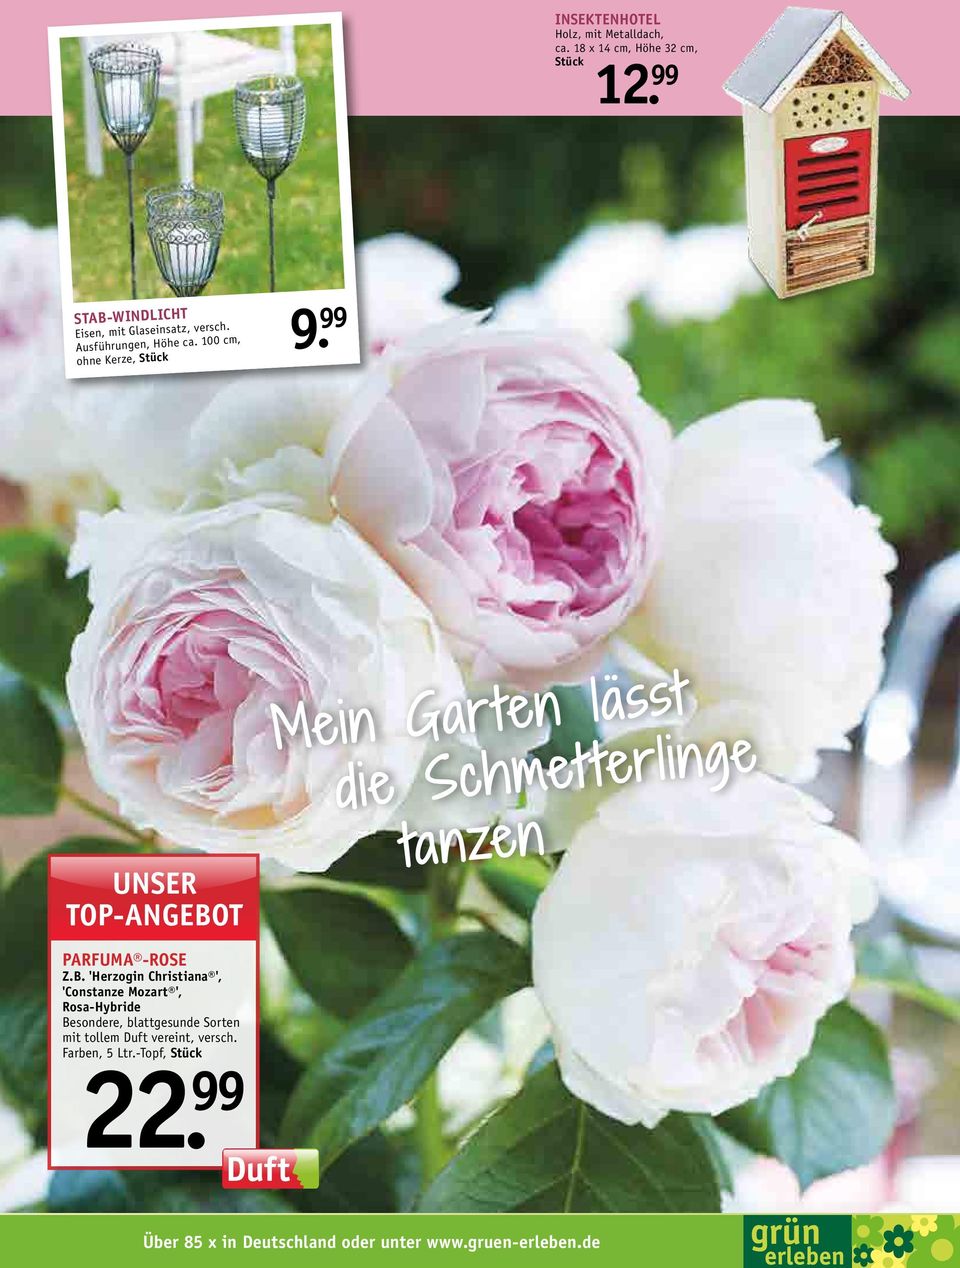 100 cm, ohne Kerze, Unser Mein Garten lasst die Schmetterlinge tanzen Parfuma -Rose Z.B.